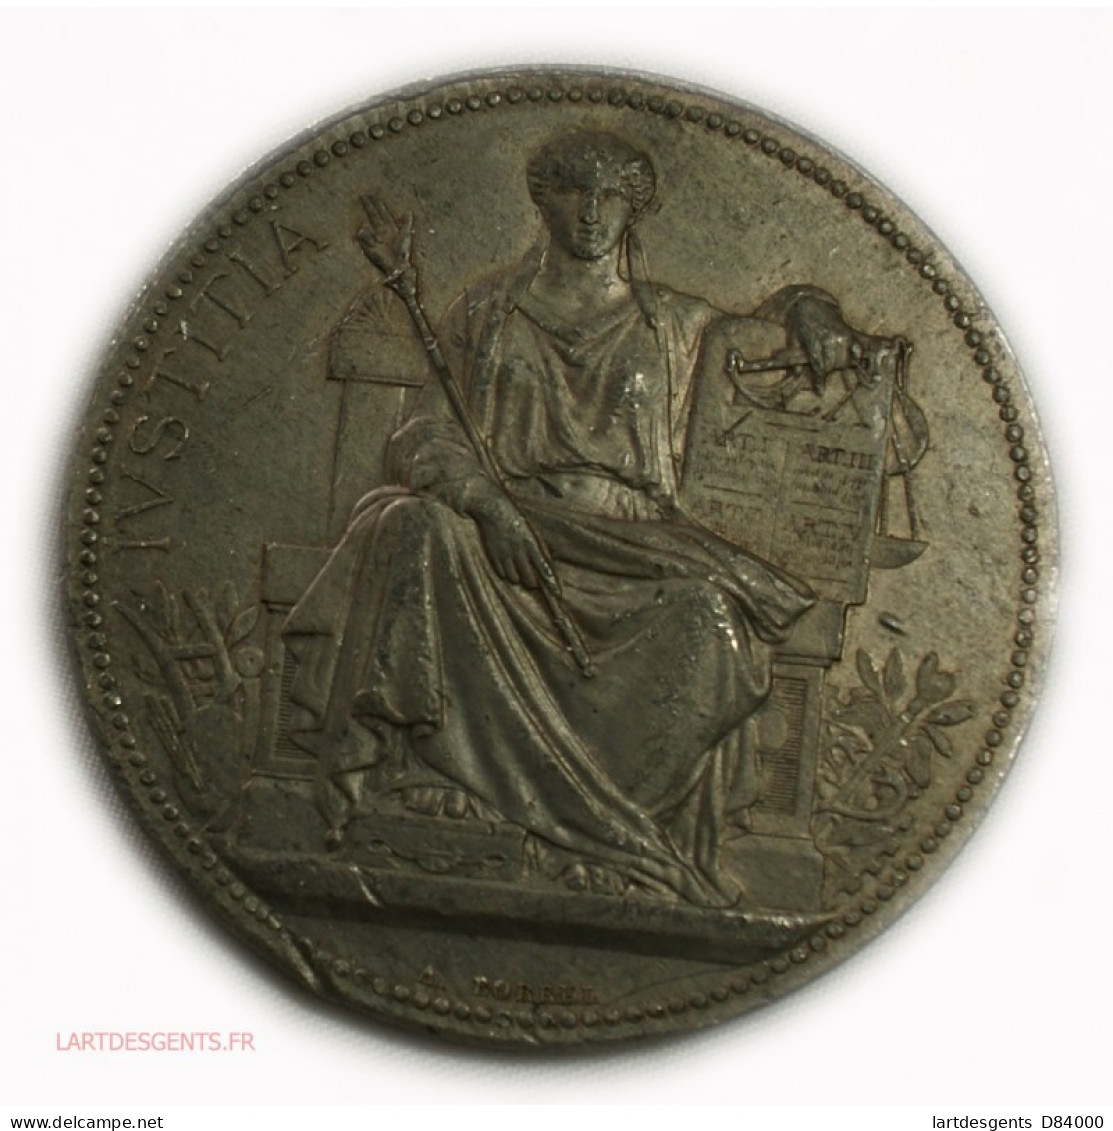 Rare Médaille Justice étain - Béziers 1892, Lartdesgents - Adel